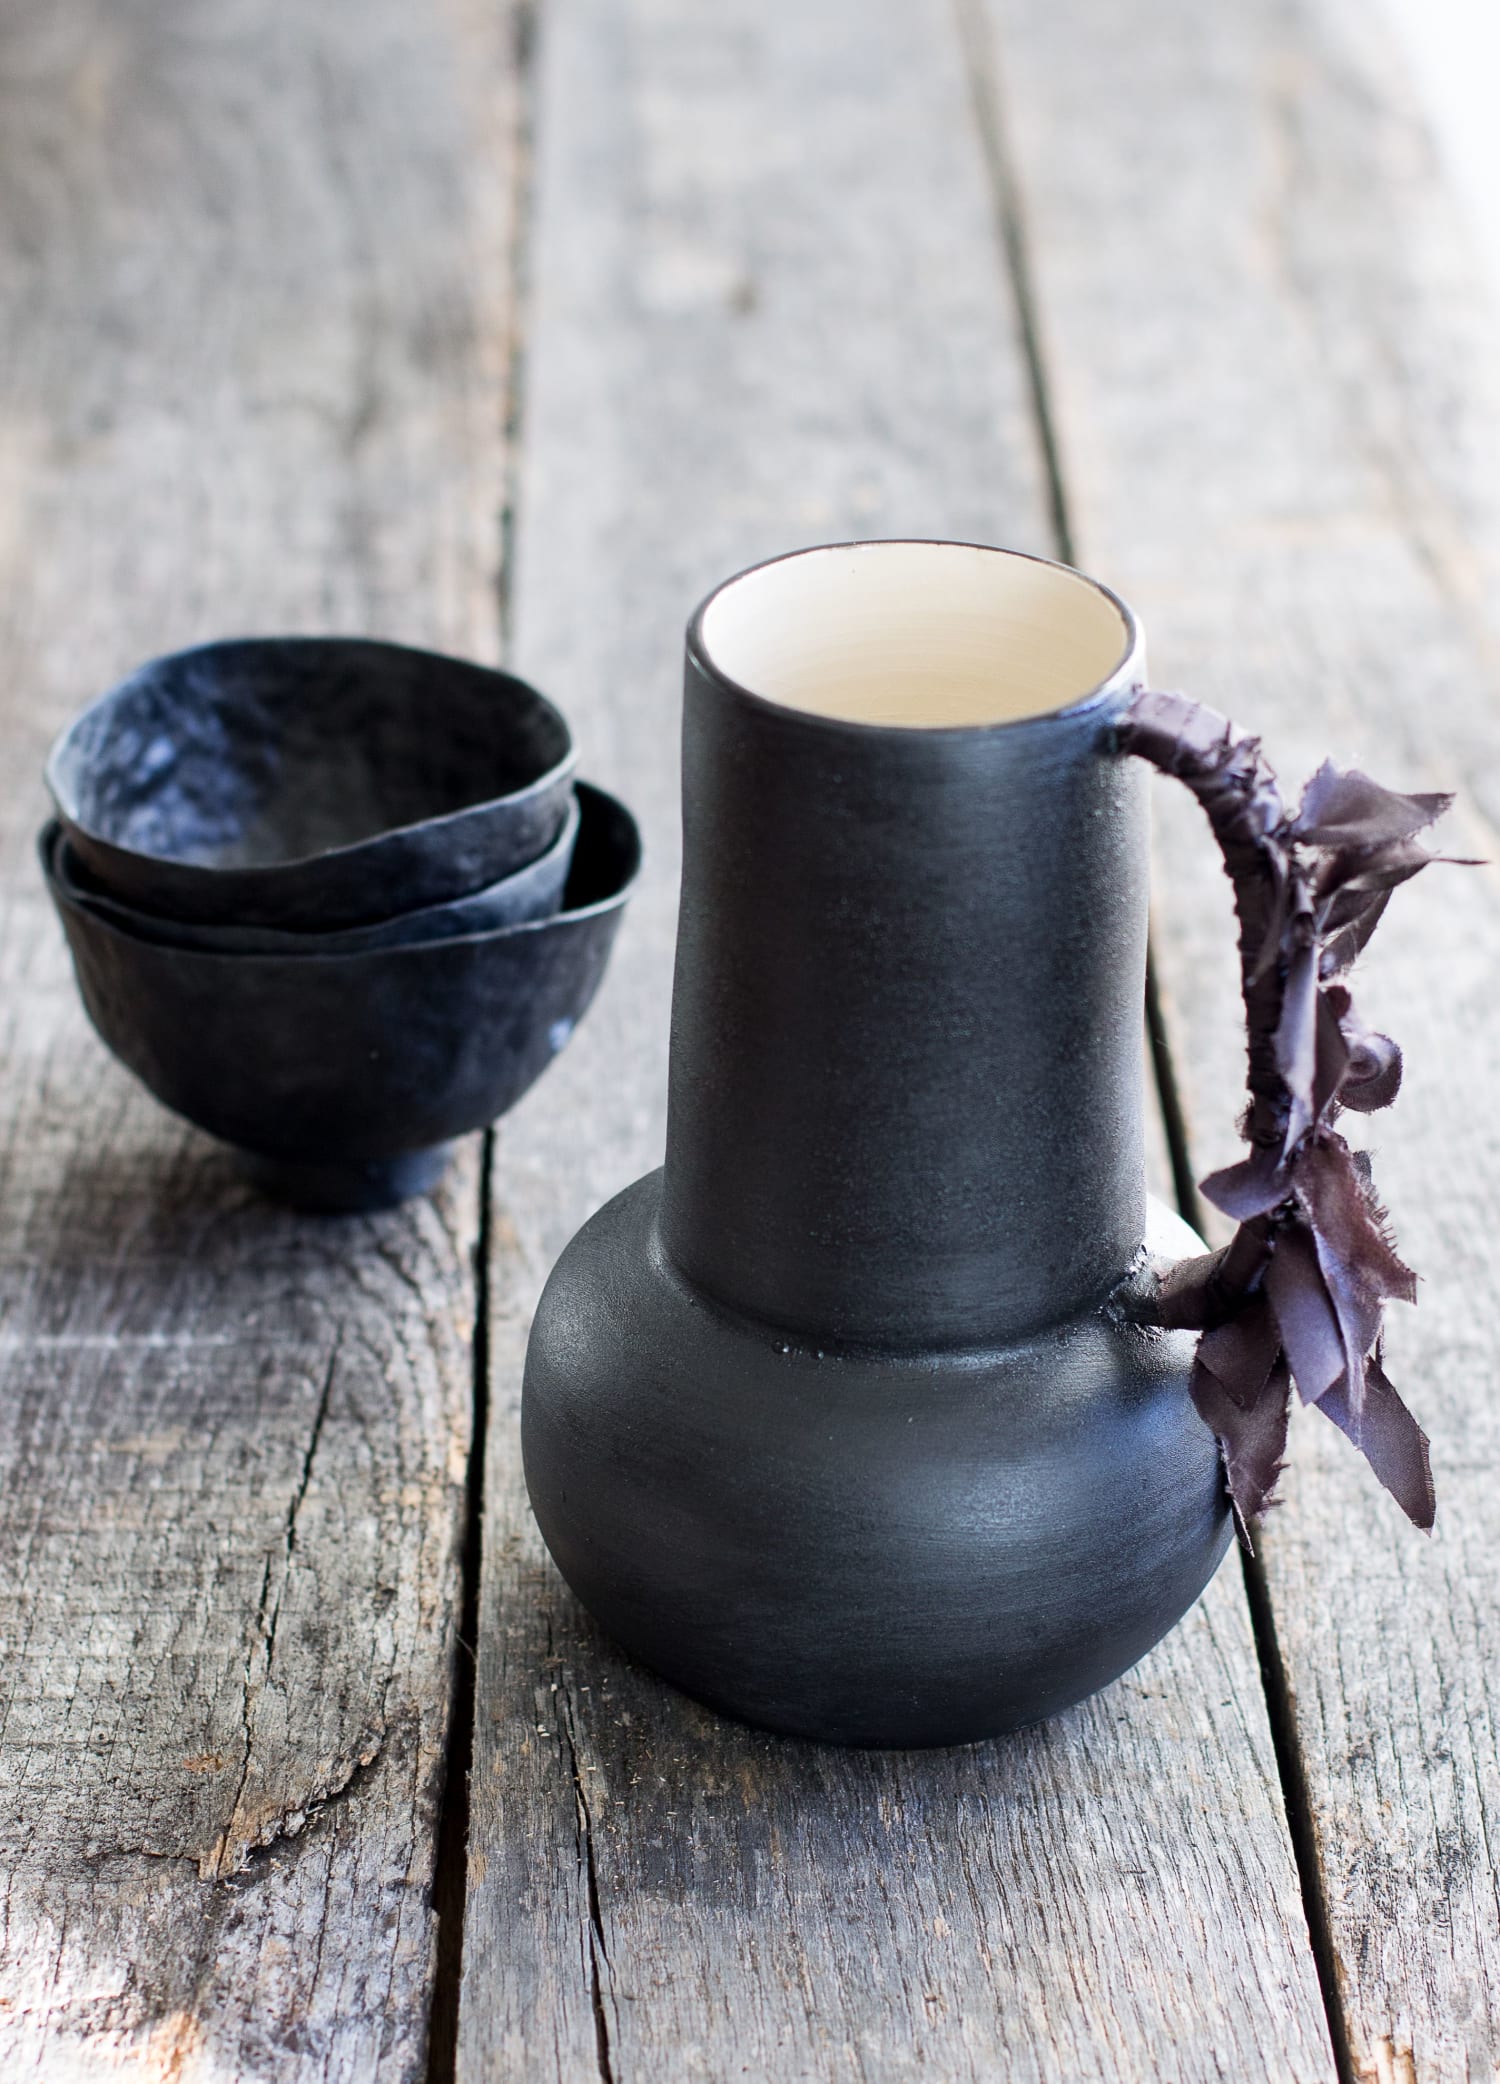 Black ceramic vases and cups